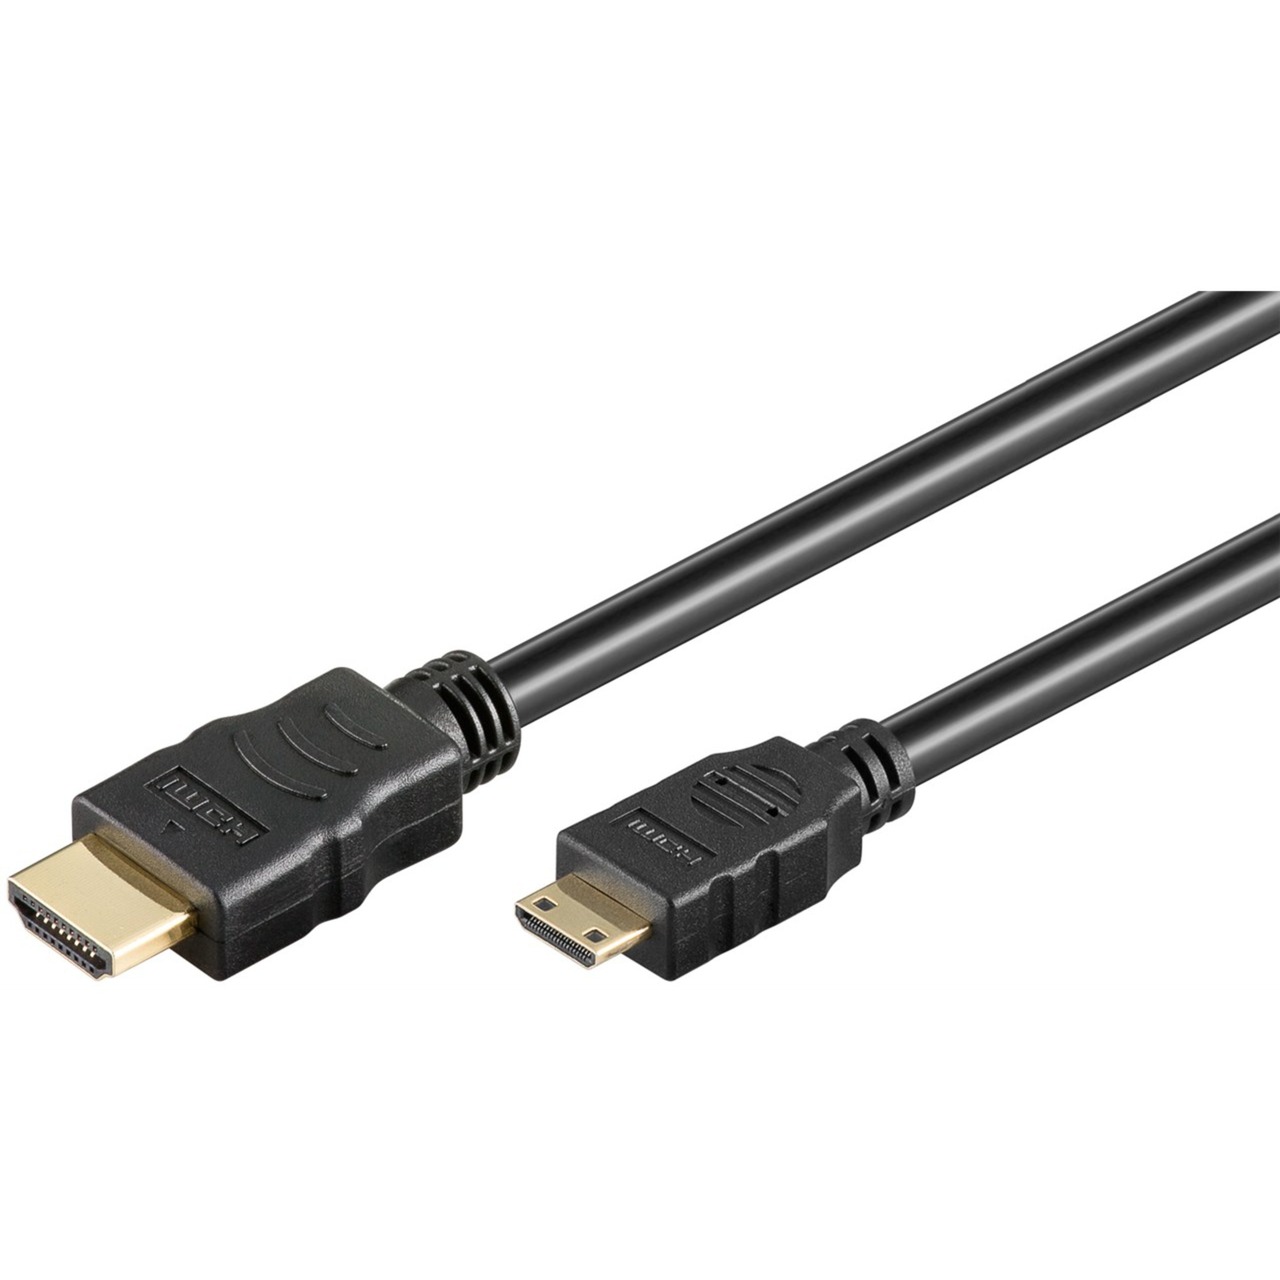 Image of Alternate - Adapterkabel HDMI > Mini-HDMI online einkaufen bei Alternate